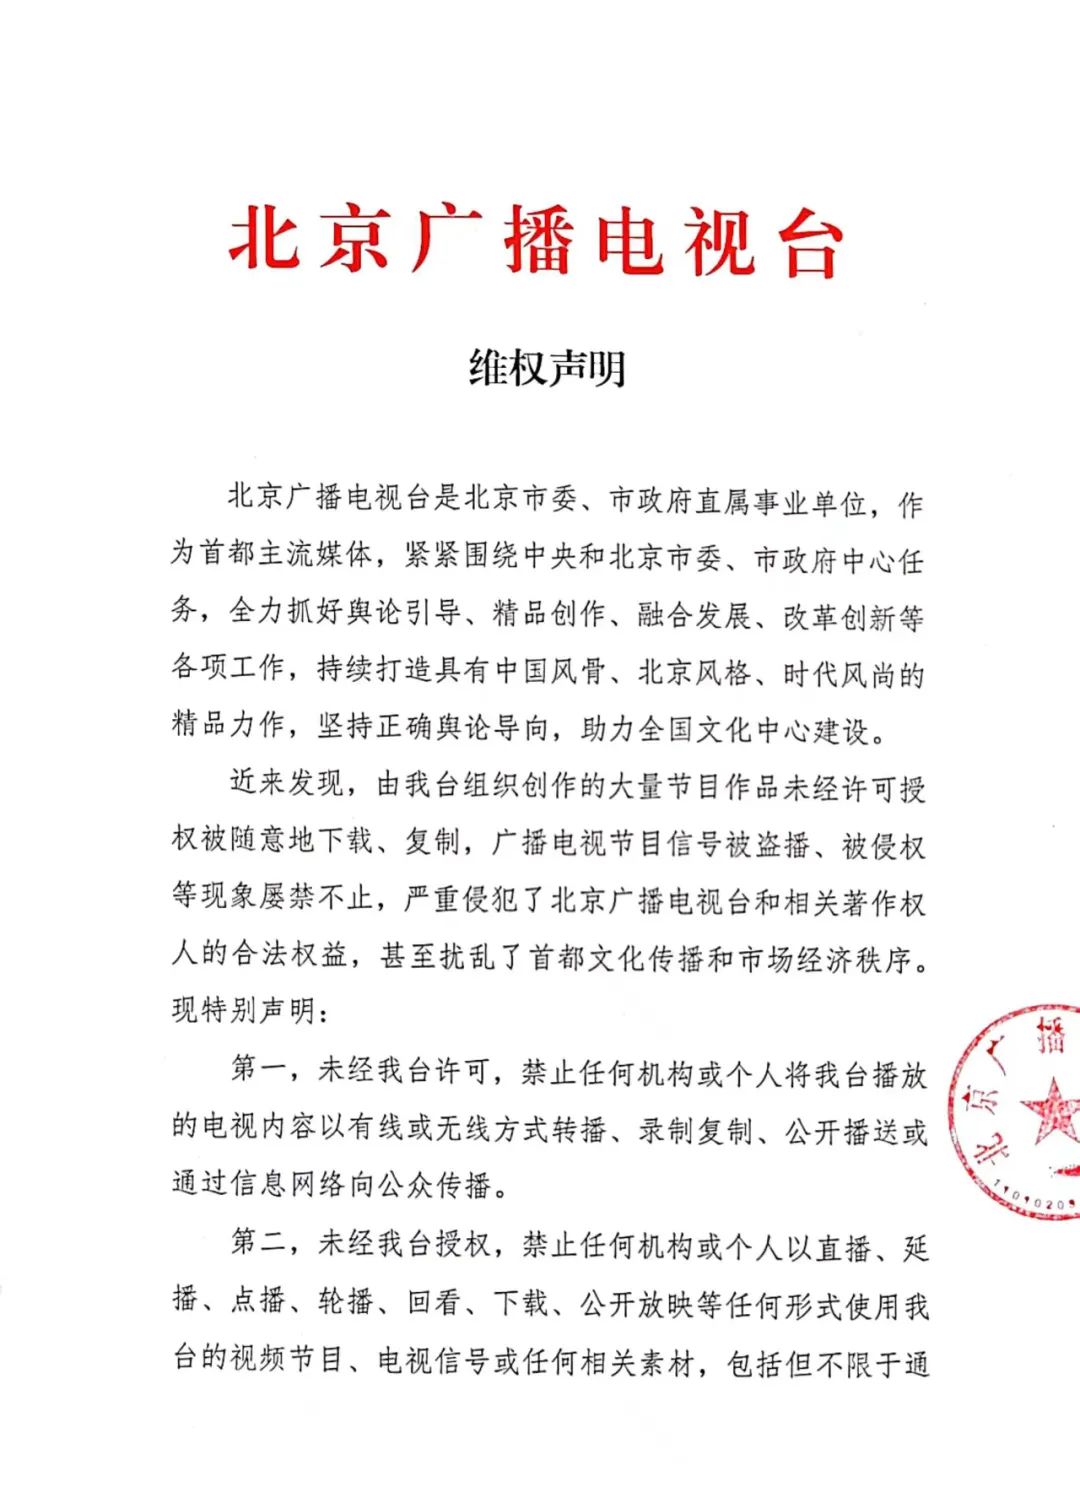 北京广播电视台发布《维权声明》